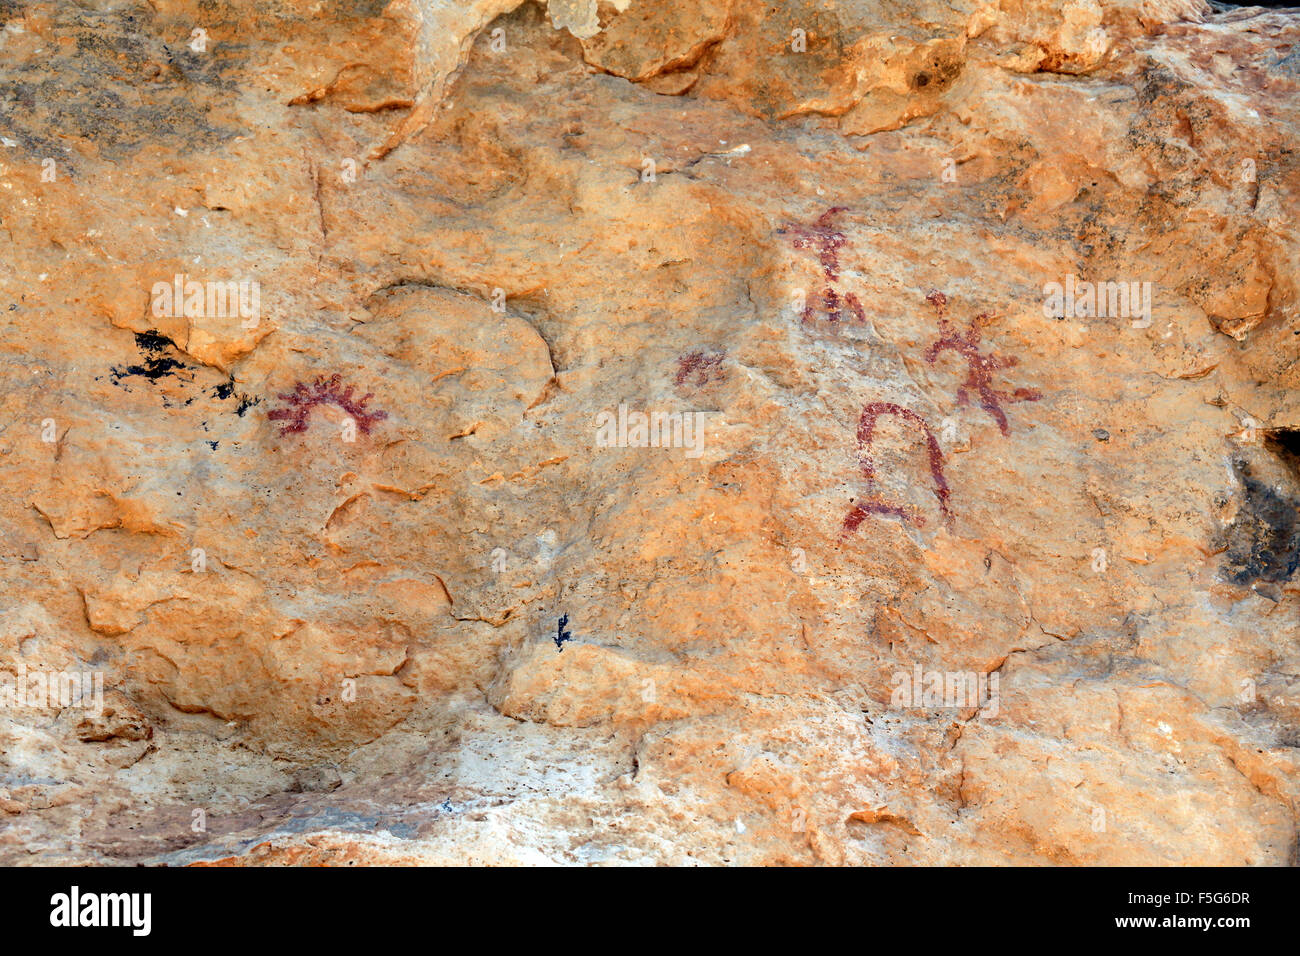 Pinturas rupestres en la cueva Portell de les Lletres, cerca de Montblanc, Tarragona, Cataluña, España. Patrimonio Mundial de la UNESCO sit Foto de stock